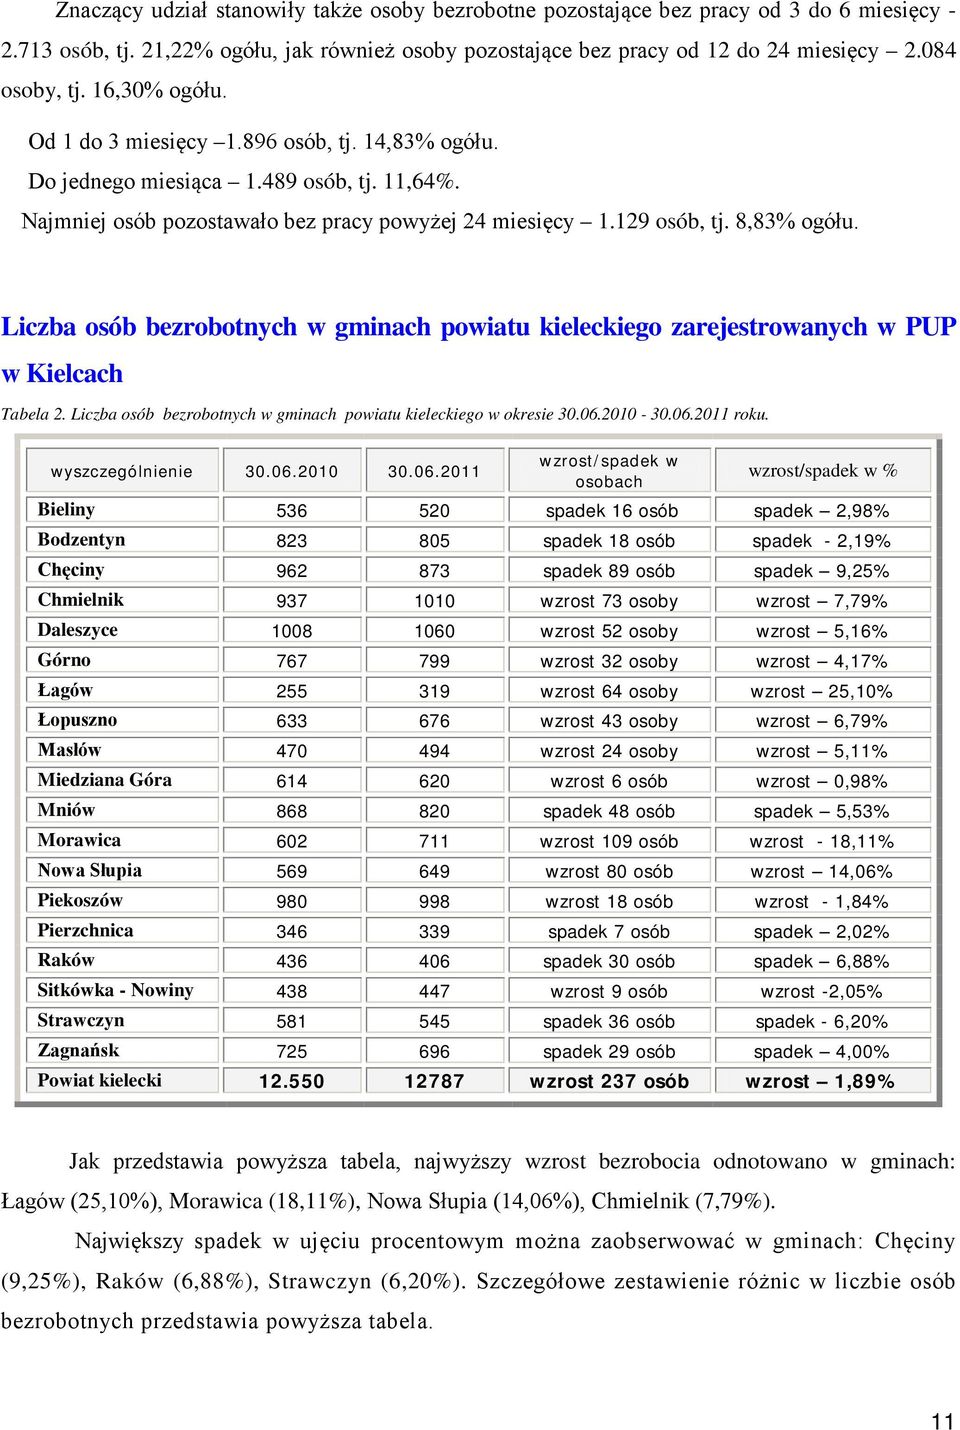 Liczba osób bezrobotnych w gminach powiatu kieleckiego zarejestrowanych w PUP w Kielcach Tabela 2. Liczba osób bezrobotnych w gminach powiatu kieleckiego w okresie 30.06.2010-30.06.2011 roku.